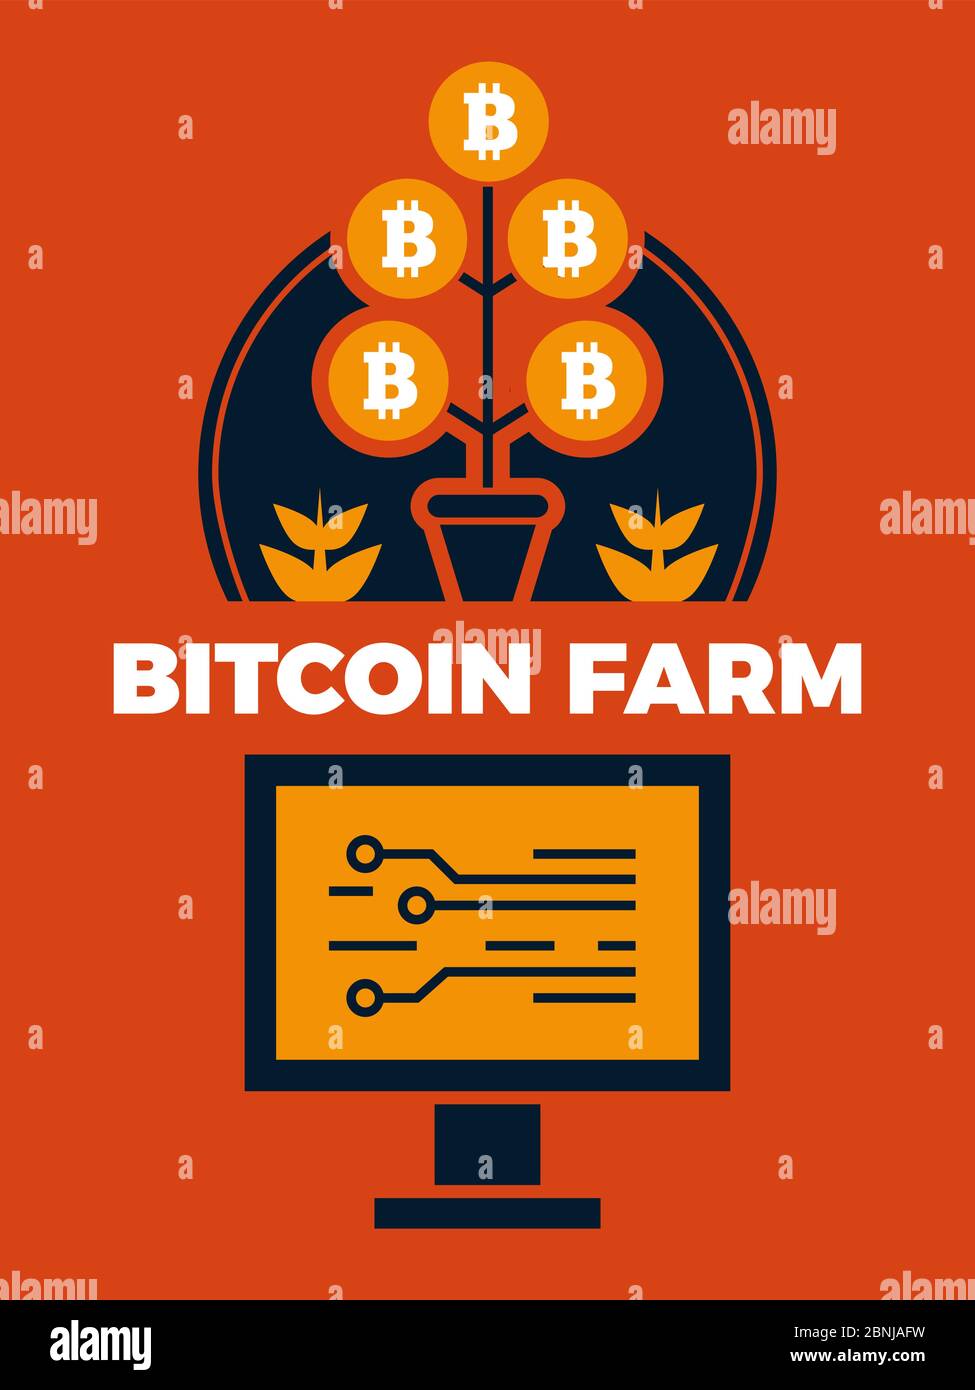 Financial concept illustration of bitcoin farm Stock Vector